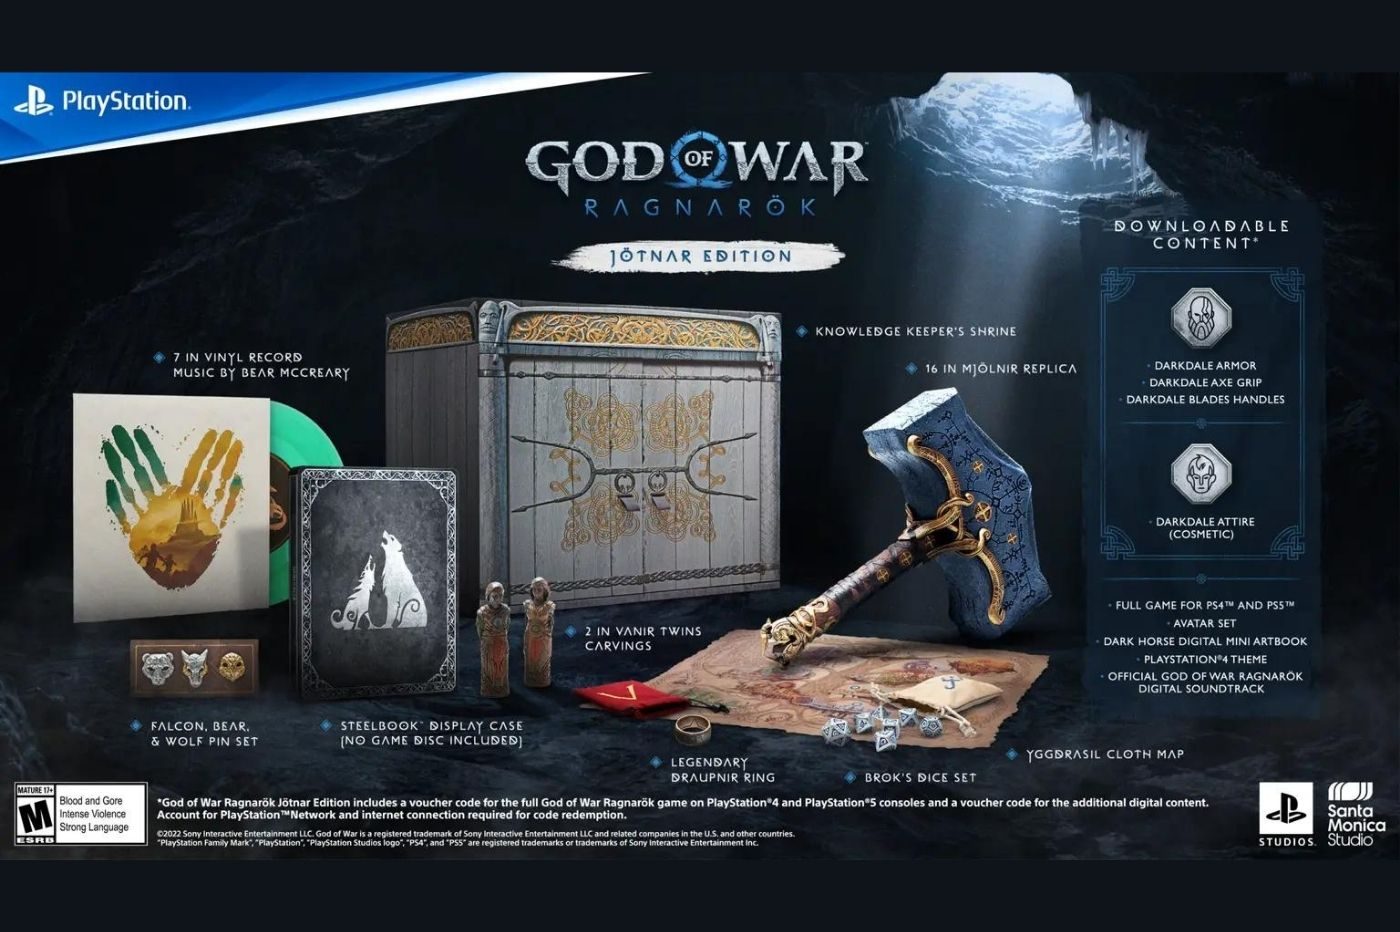 Imagen promocional de una edición especial de God of War y sus contenidos.